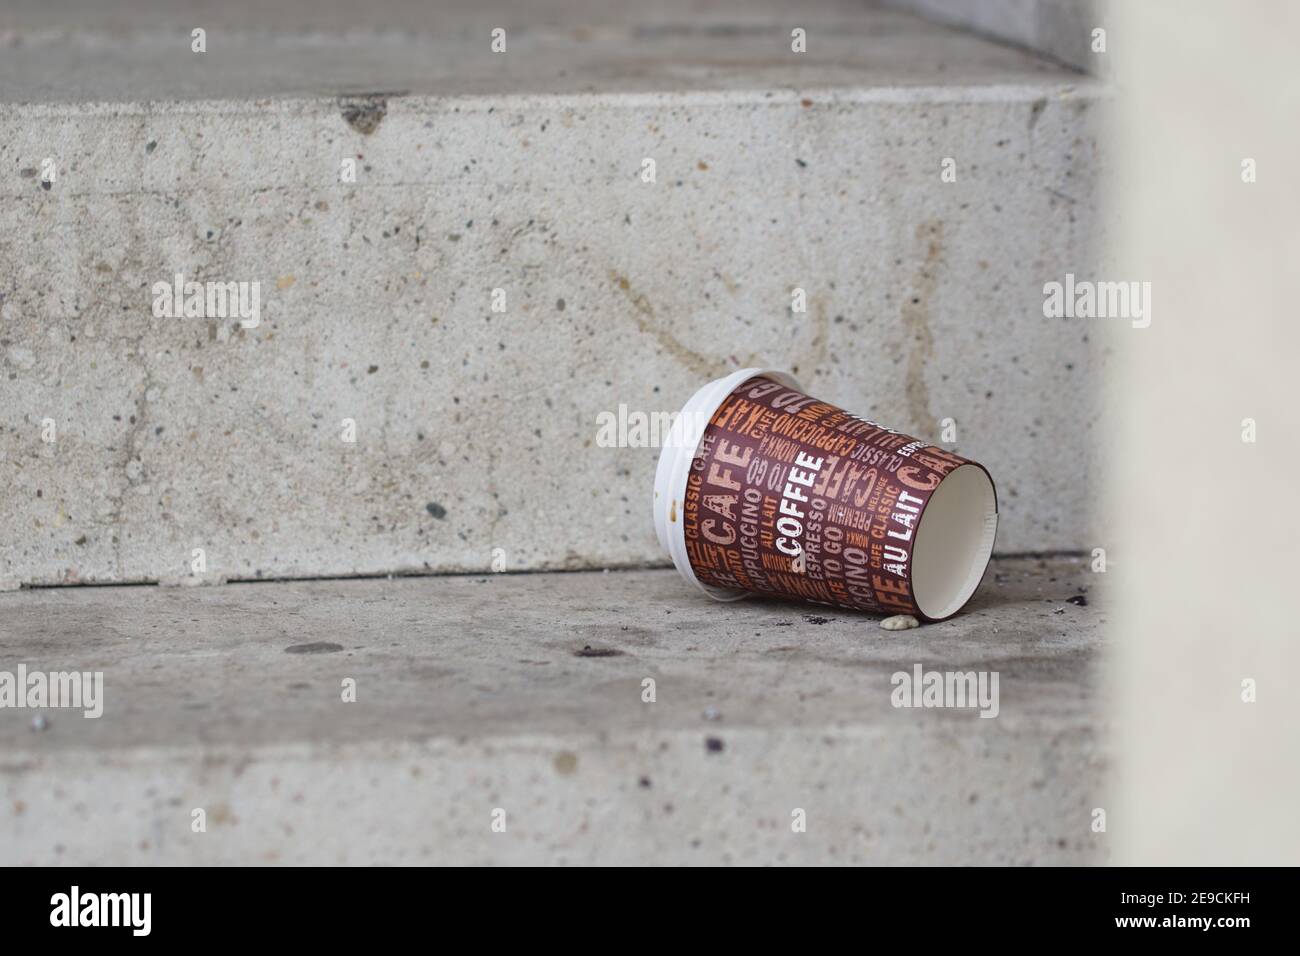 Einweg-Kaffee zu CO Tasse auf dem Boden weggeworfen - Abfall und Umweltverschmutzung Stockfoto